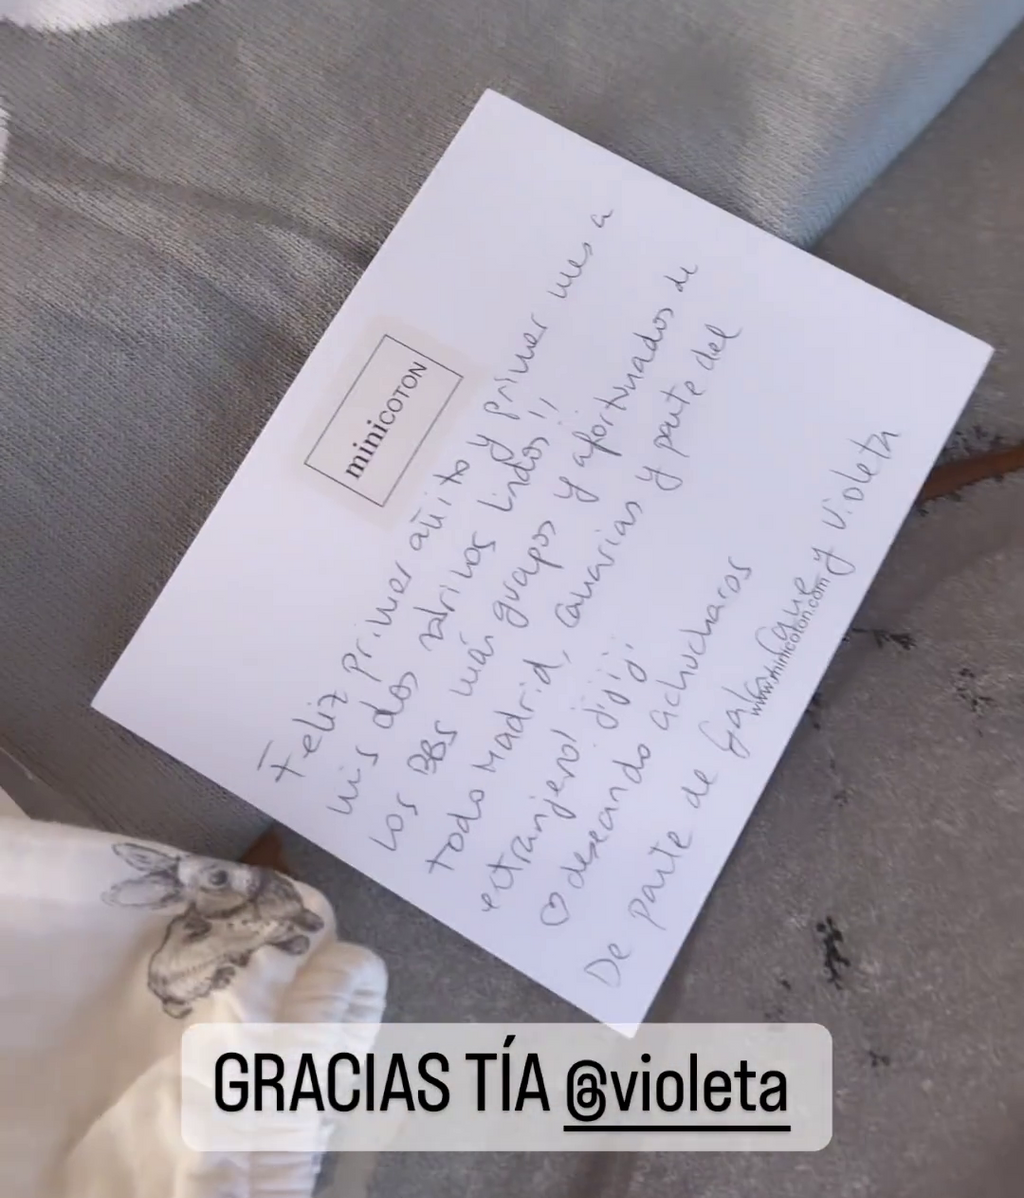 Violeta también ha escrito una carta para sus dos 'sobrinos'